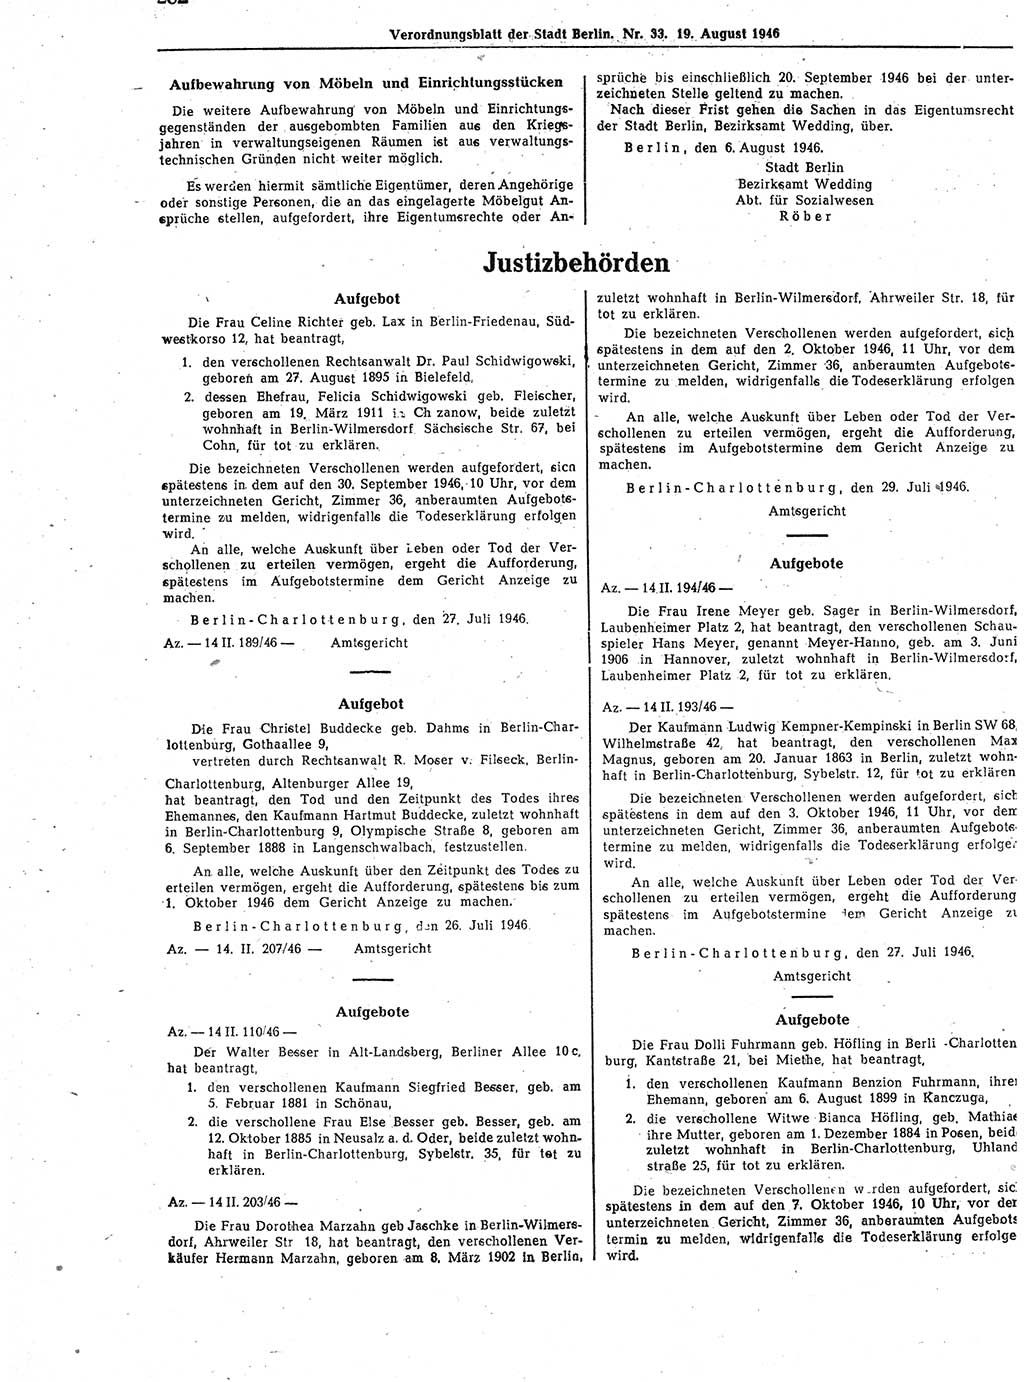 Verordnungsblatt (VOBl.) der Stadt Berlin, für Groß-Berlin 1946, Seite 282 (VOBl. Bln. 1946, S. 282)